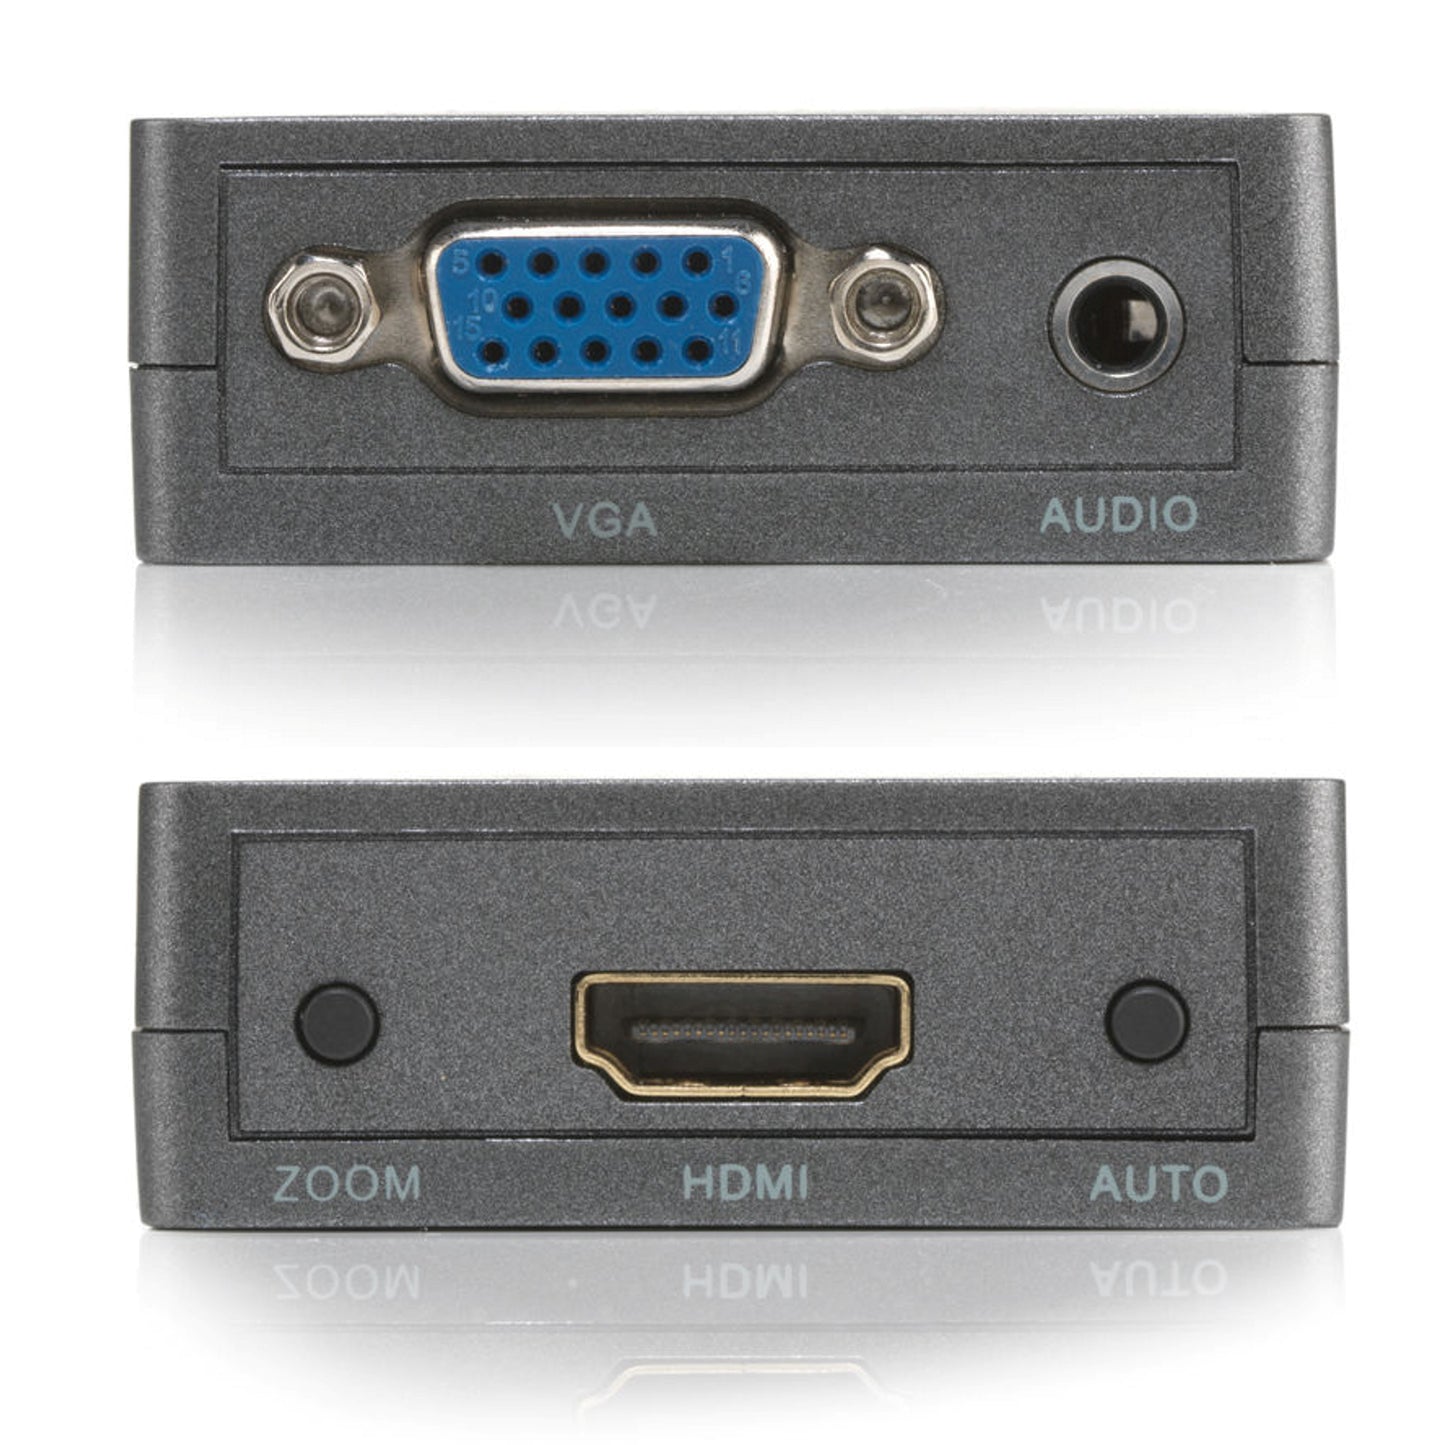 Marmitek Connect VH51 Convertisseur VGA vers HDMI, 720p/1080p, avec fonction zoom